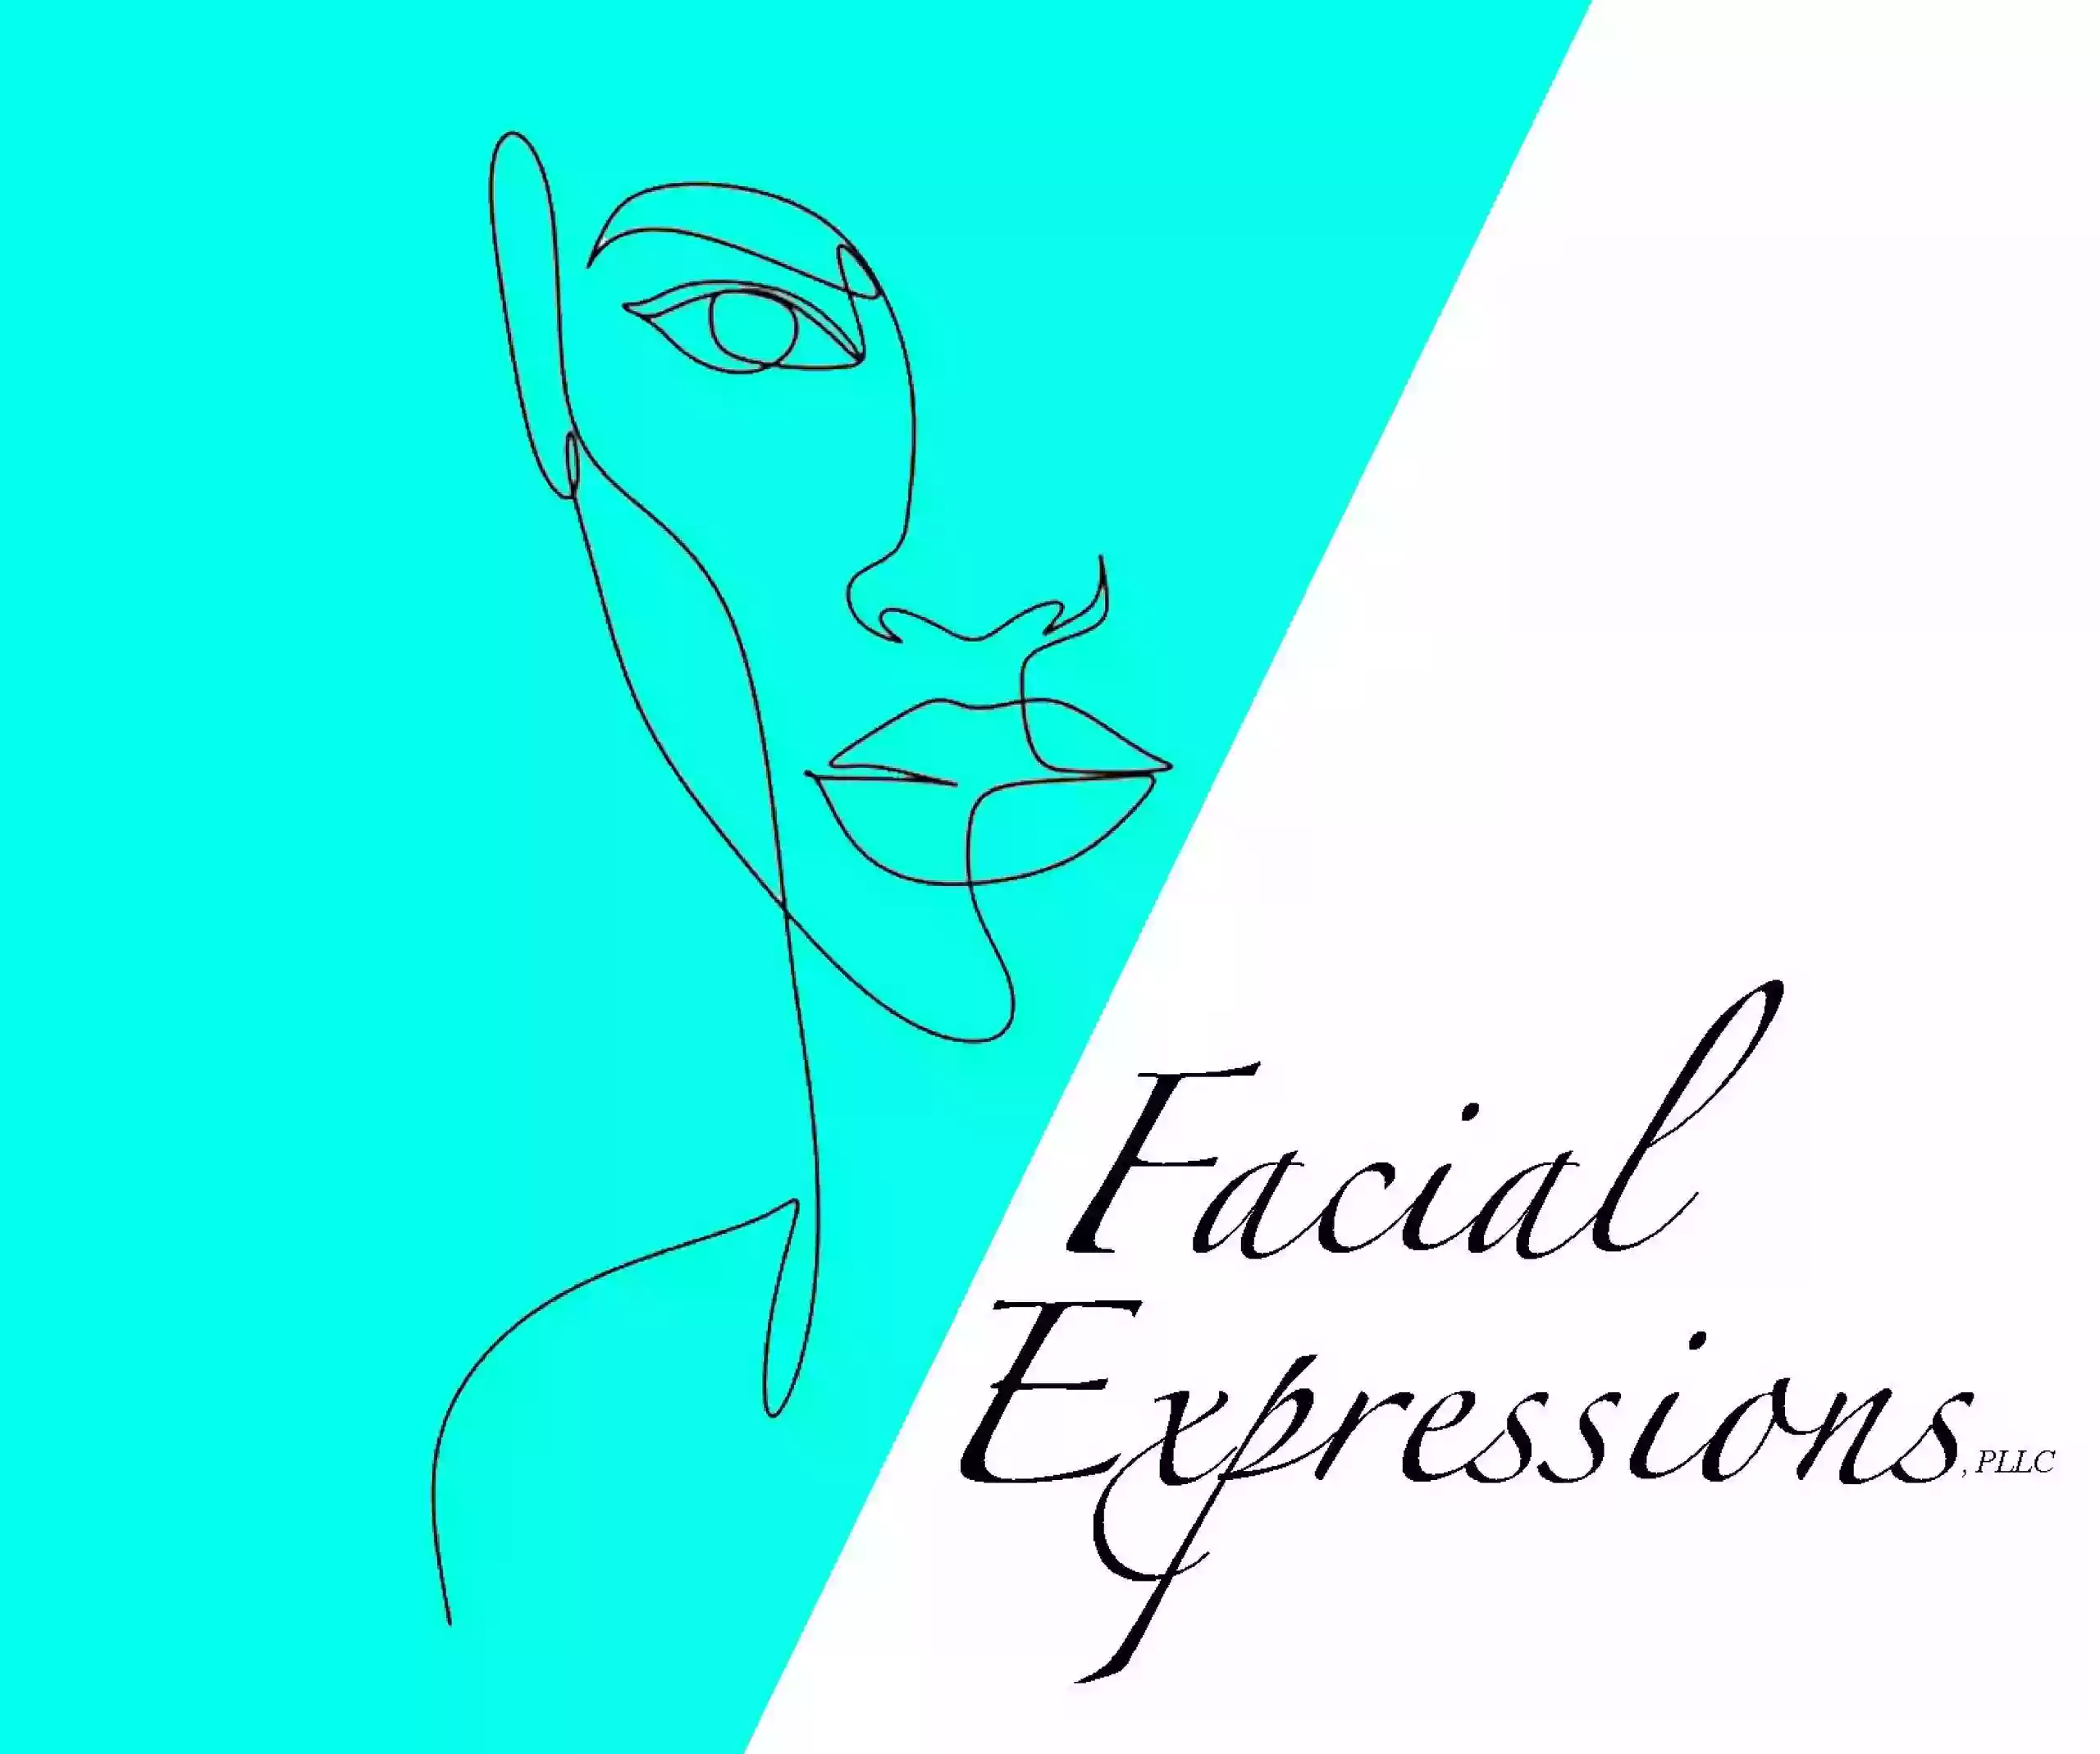 Facial Expressions PLLC